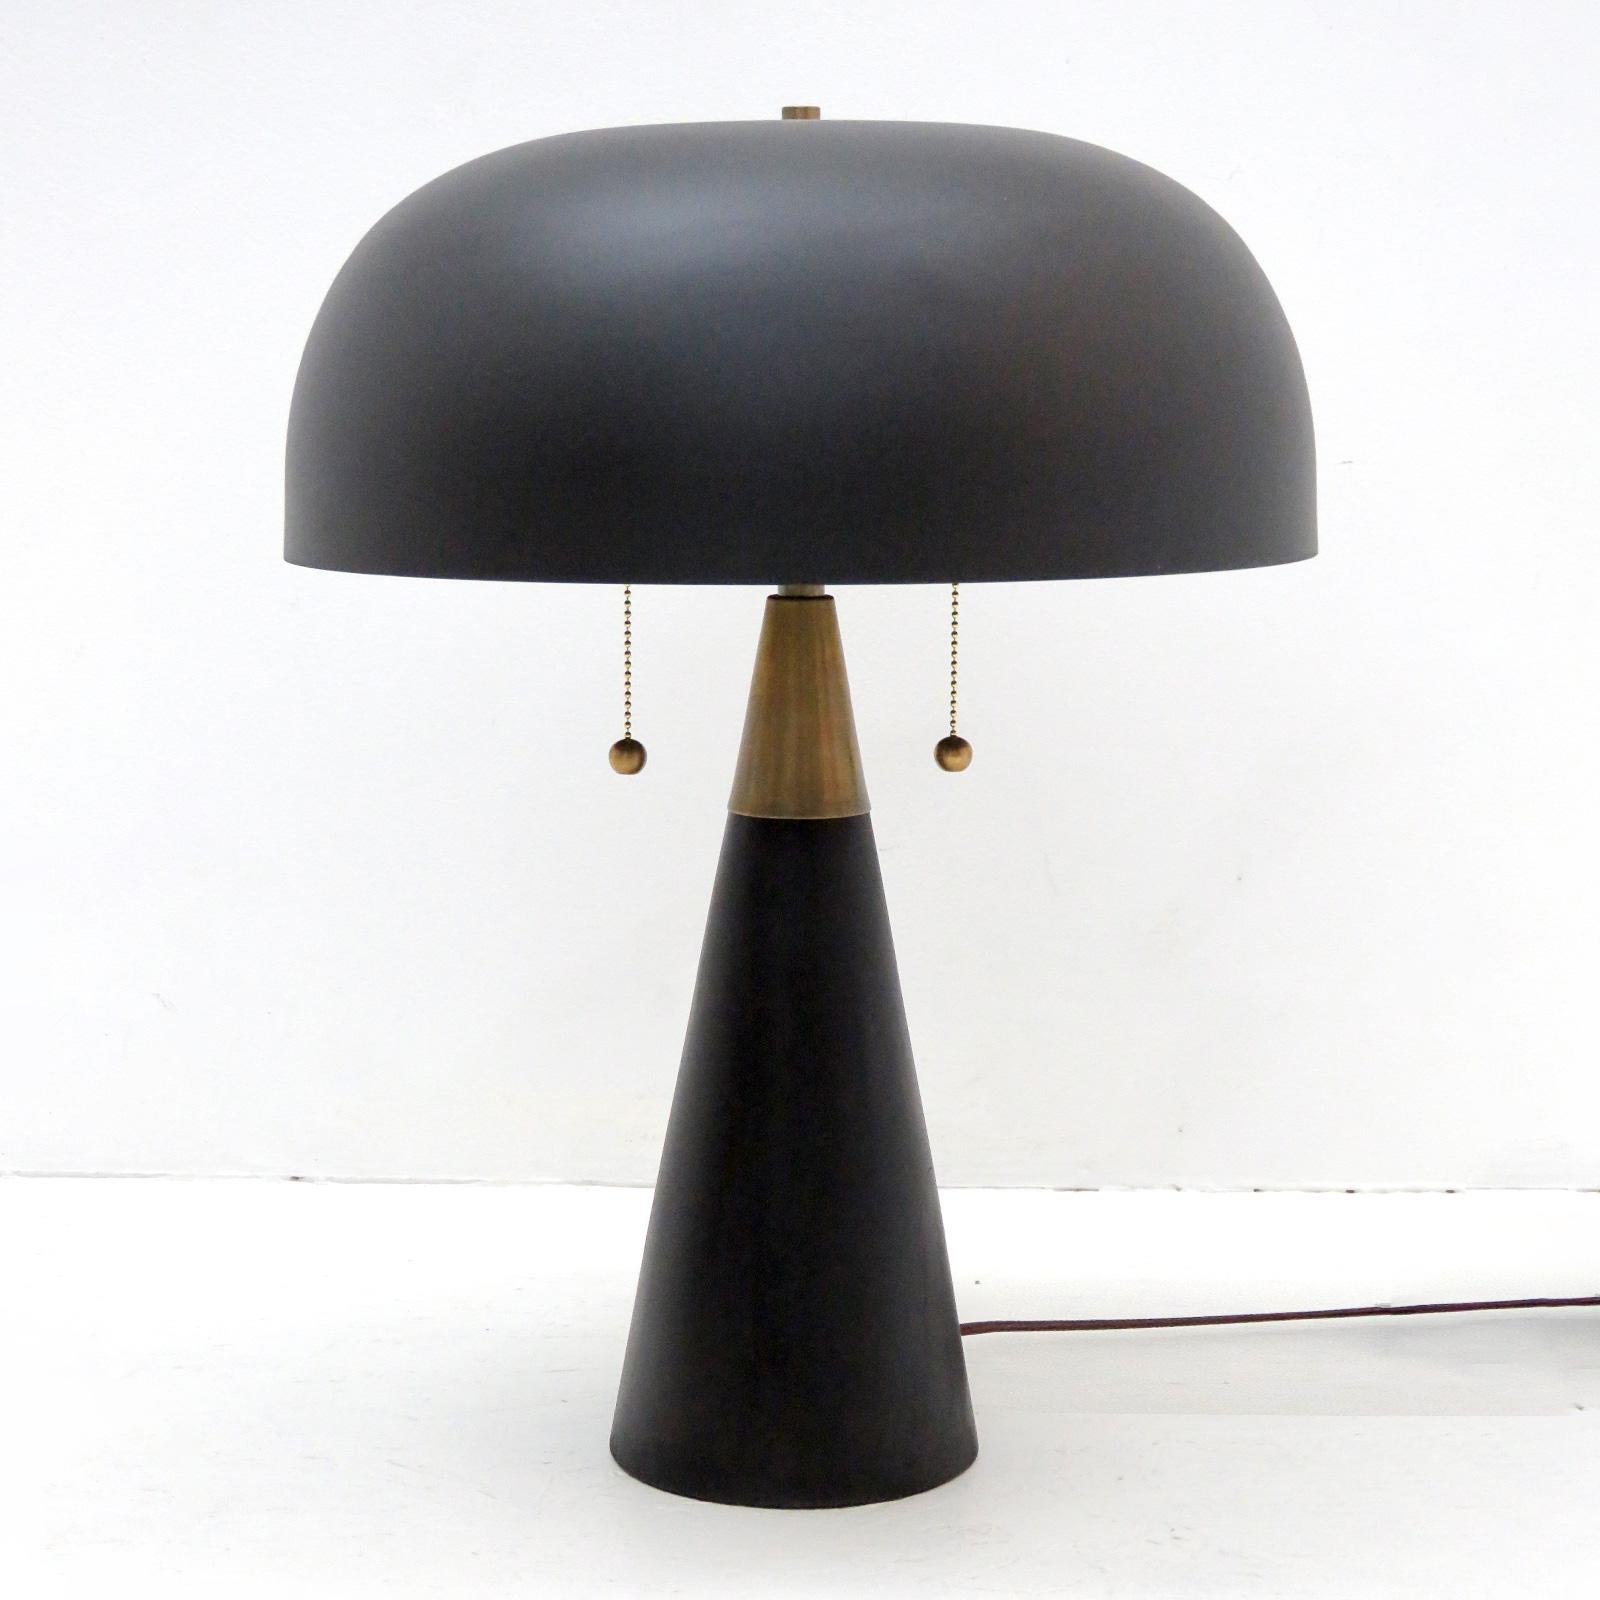 Merveilleuses lampes de table modernes et organiques d'Alvaro Benitez pour Gallery L7, avec une base en bois noirci, un grand abat-jour en métal poudré noir et des ferrures en laiton. Installation à double ampoule avec deux interrupteurs à tirette